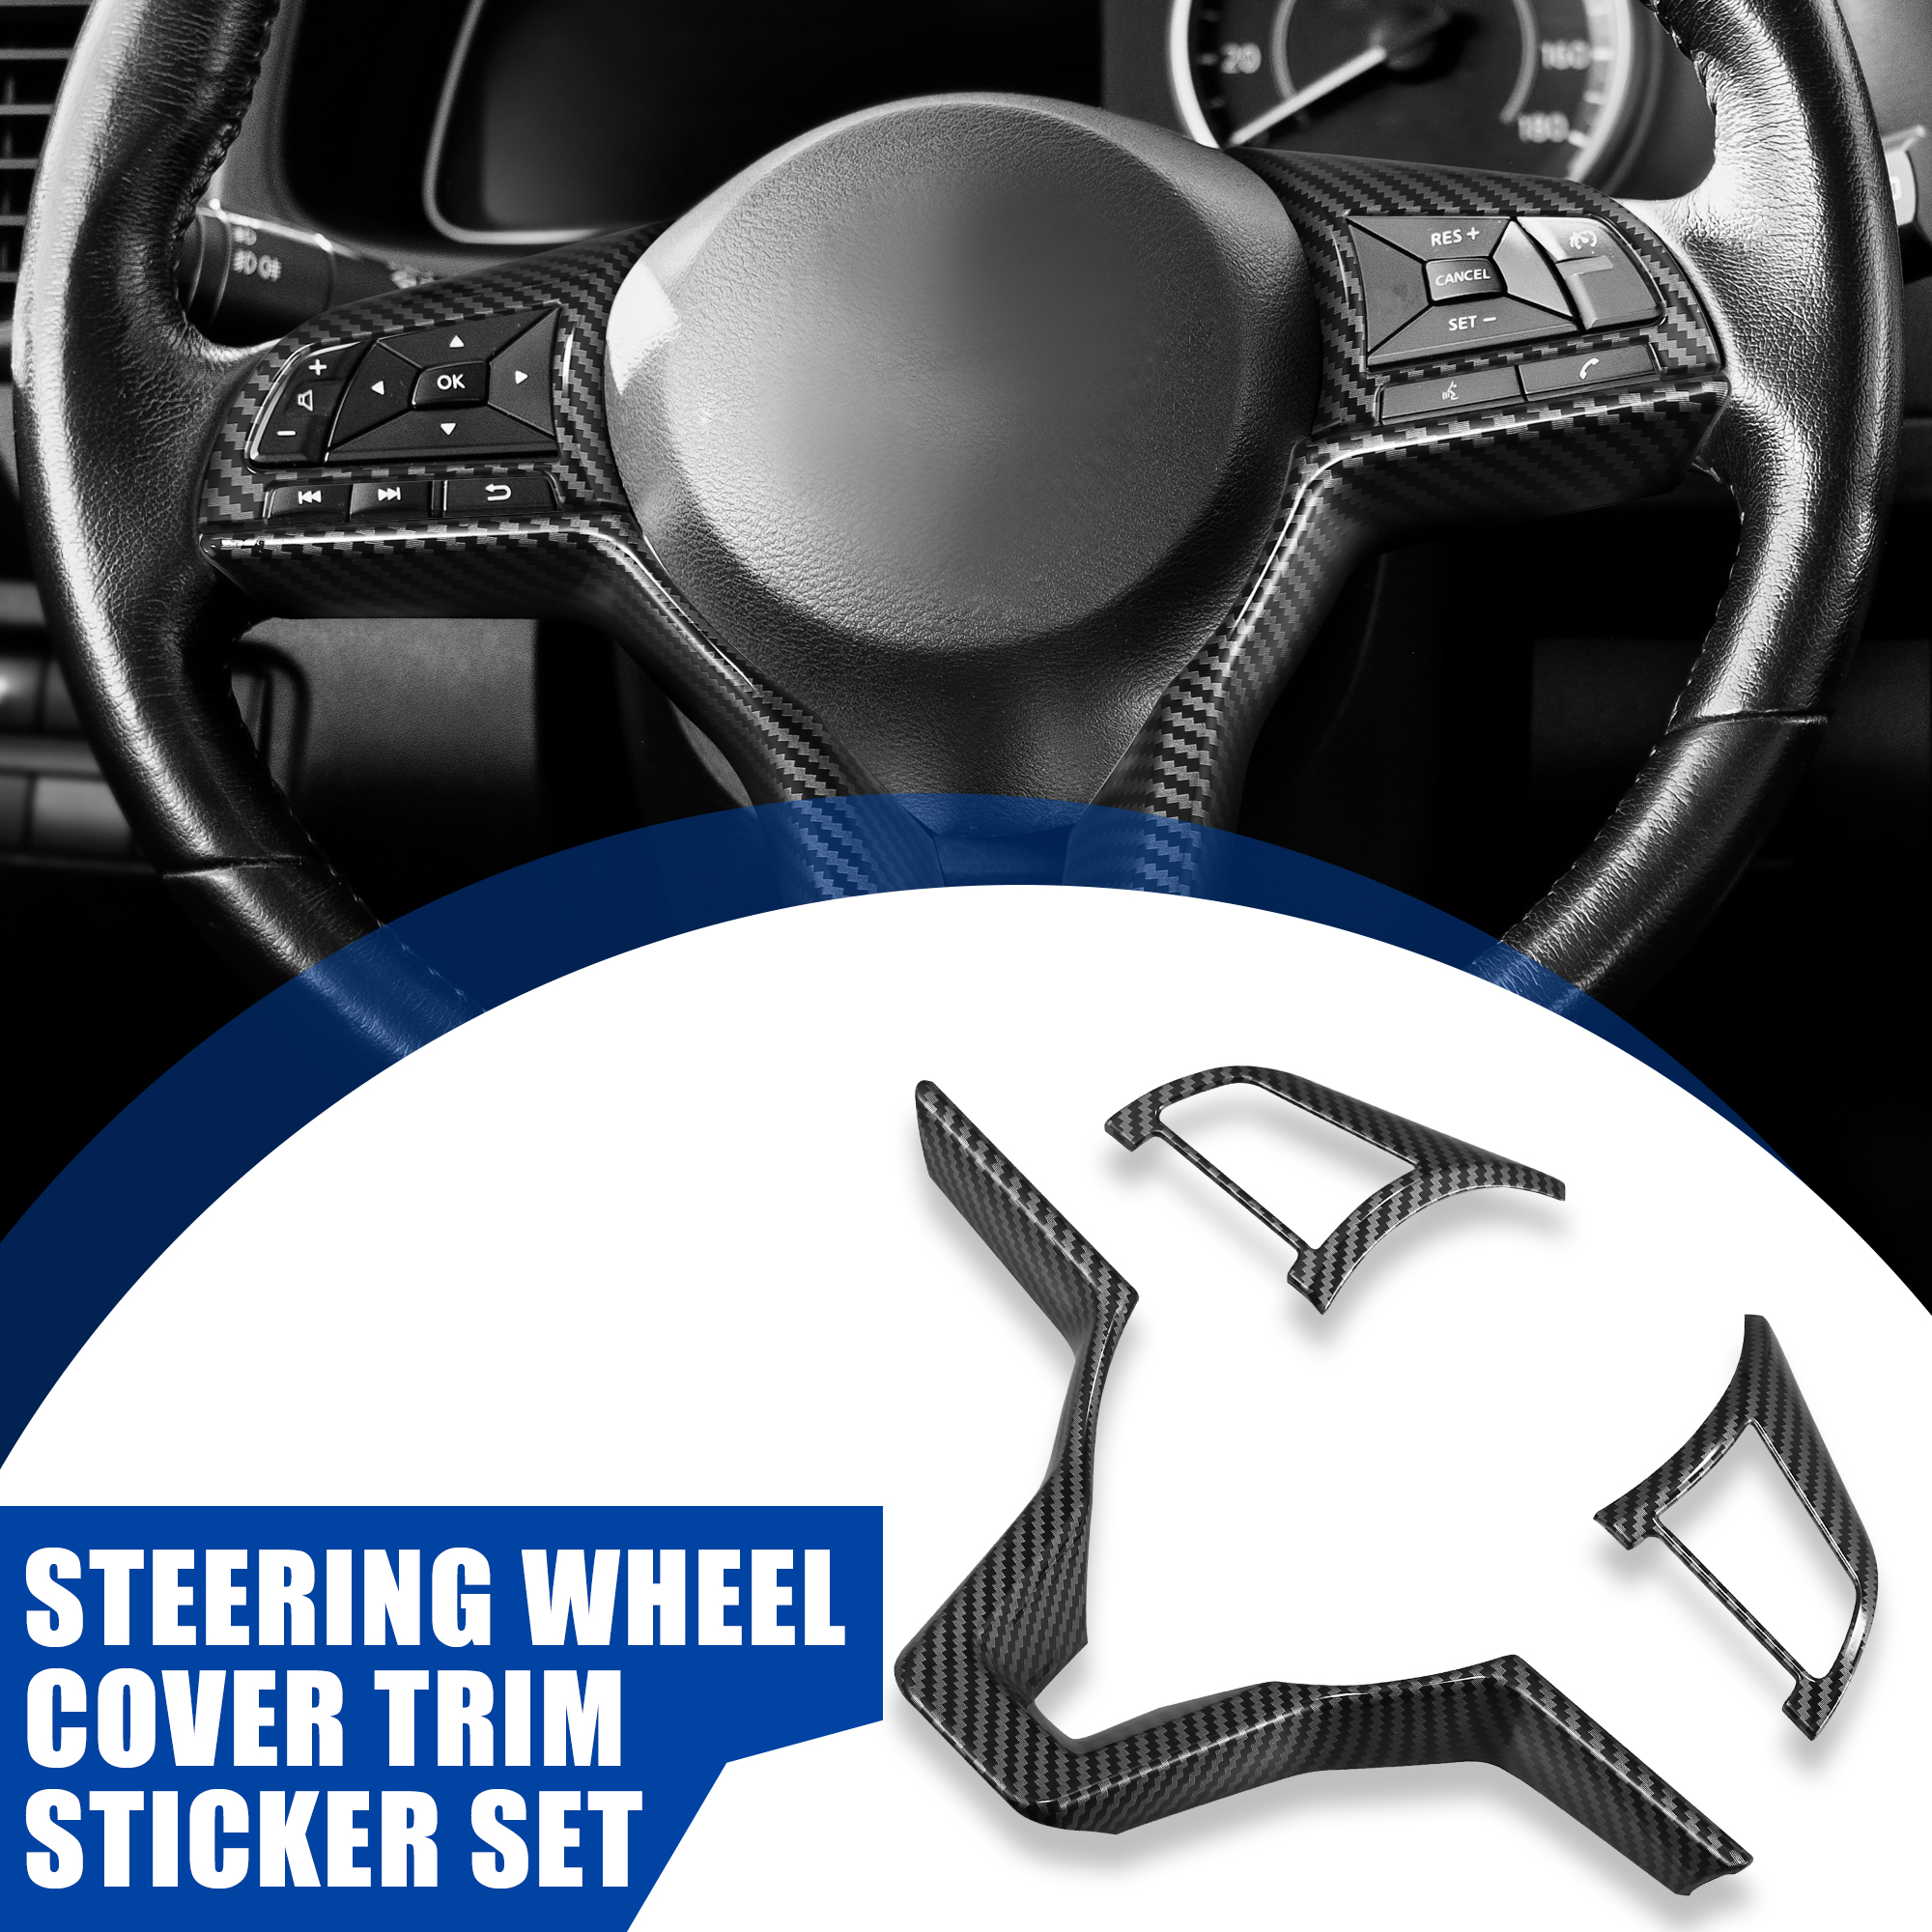 Unique Bargains 3pcs Steering Wheel Cover for Nissan Altima 2019-2020 Carbon Fiber Pattern